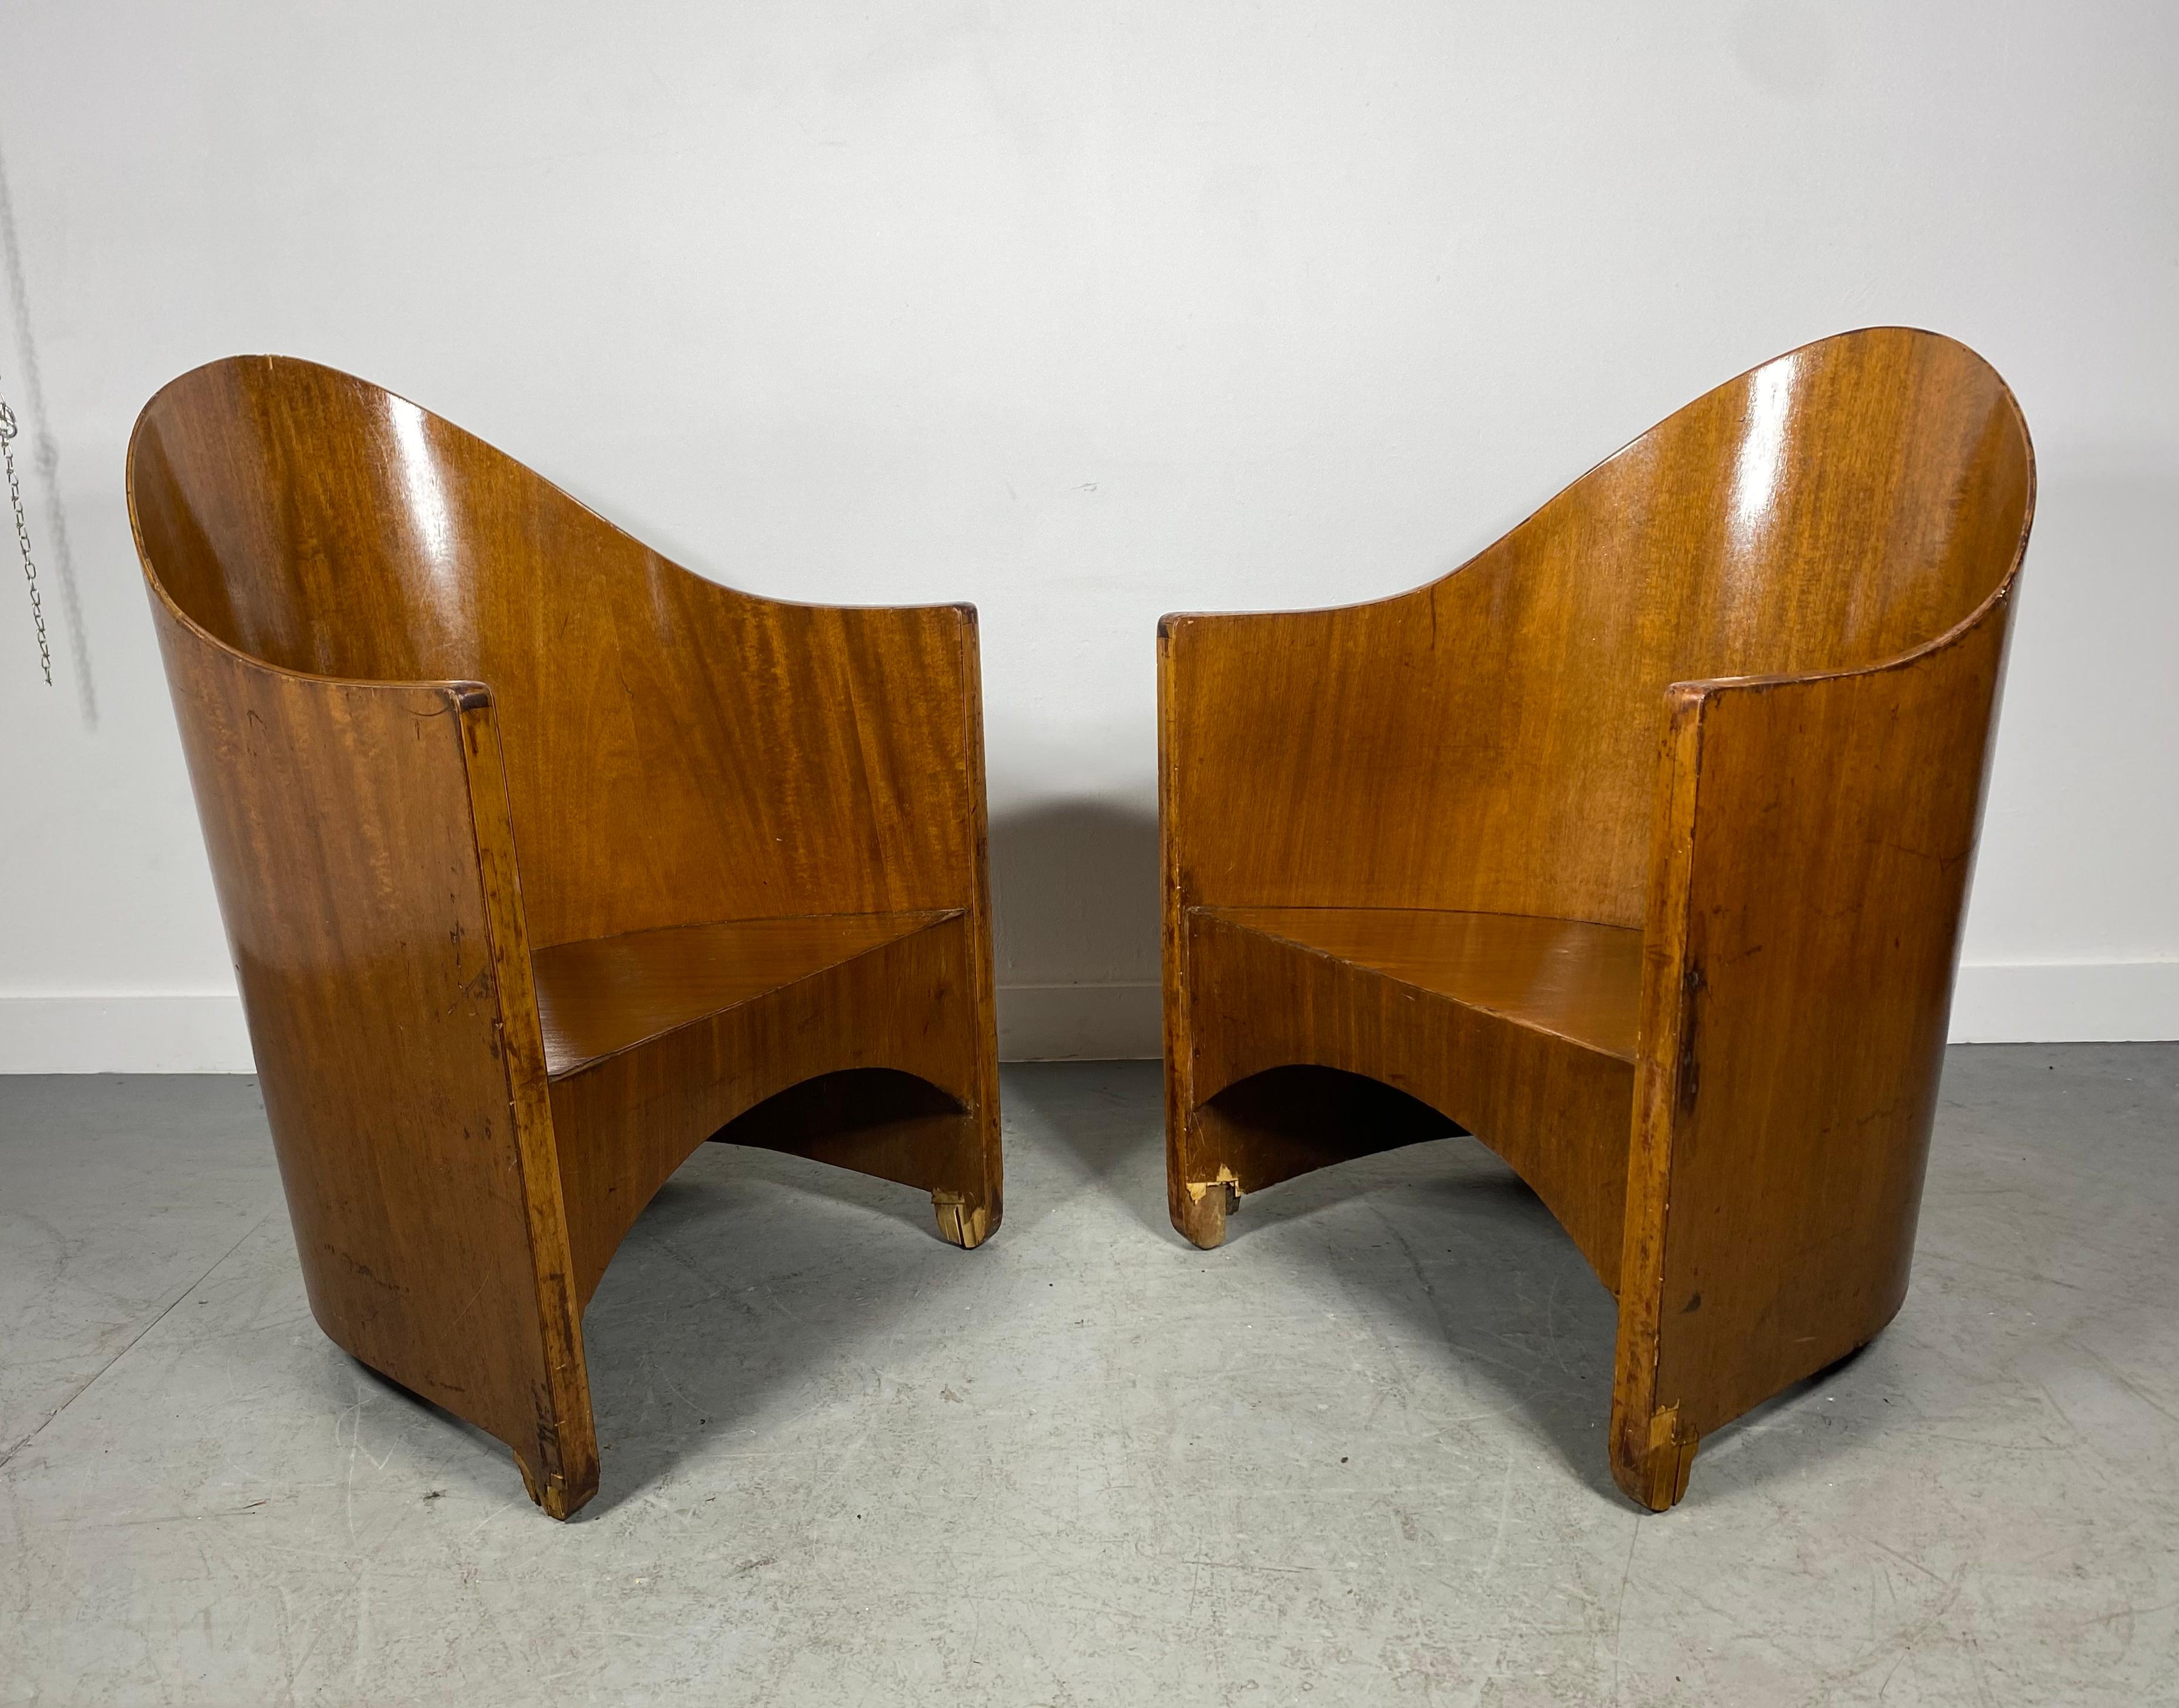 Paire extrêmement rare de chaises à accoudoirs modernistes conçues par Walter von Nessen ,  c.1929..Les chaises conservent leur couleur, leur finition et leur patine d'origine. Elles ont besoin d'être restaurées, principalement au niveau des pieds